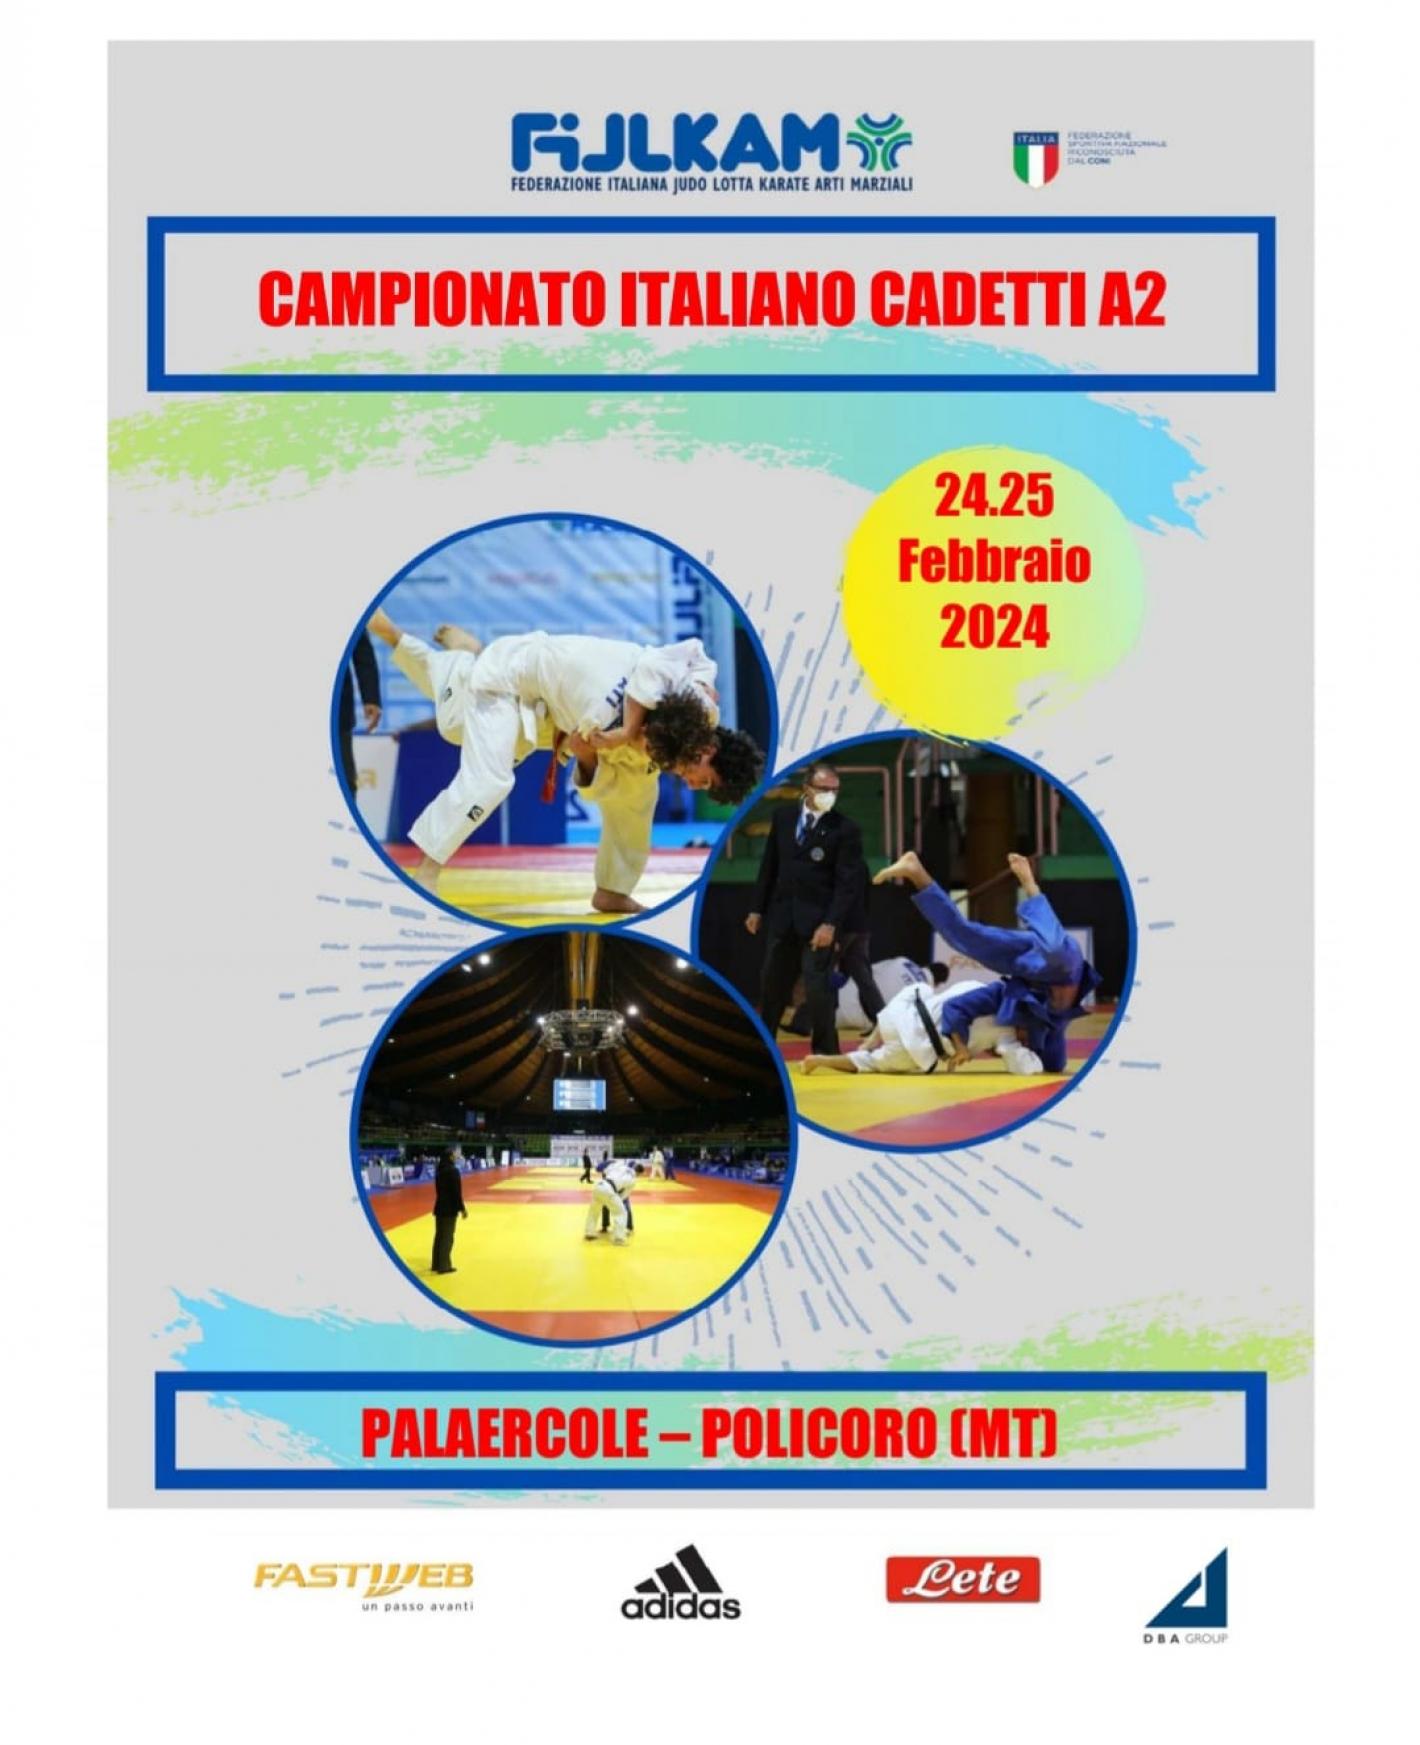 images/marche/Judo/medium/campionato_italiano_cadetti_A2_2024.jpg